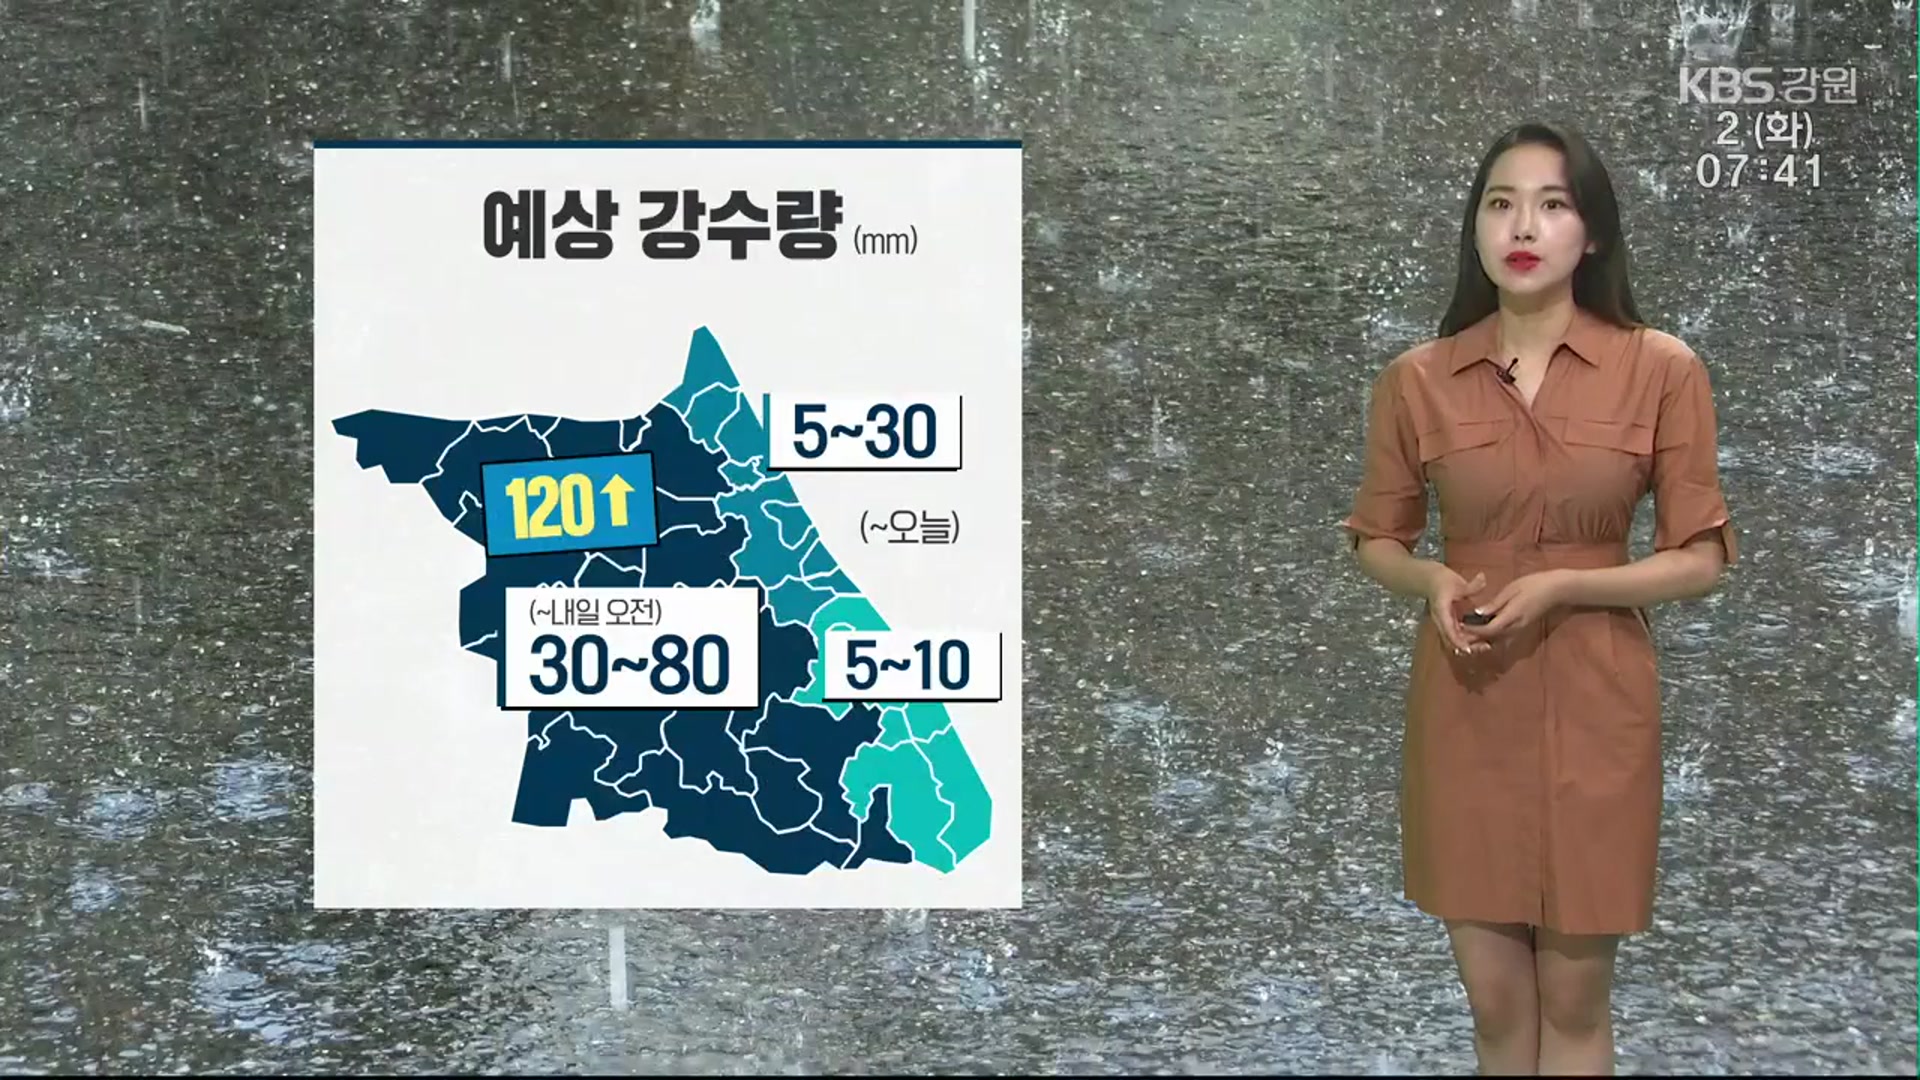 [날씨] 강원 영서 내일 오전까지 ‘비’…낮 최고 춘천 30도, 원주 31도